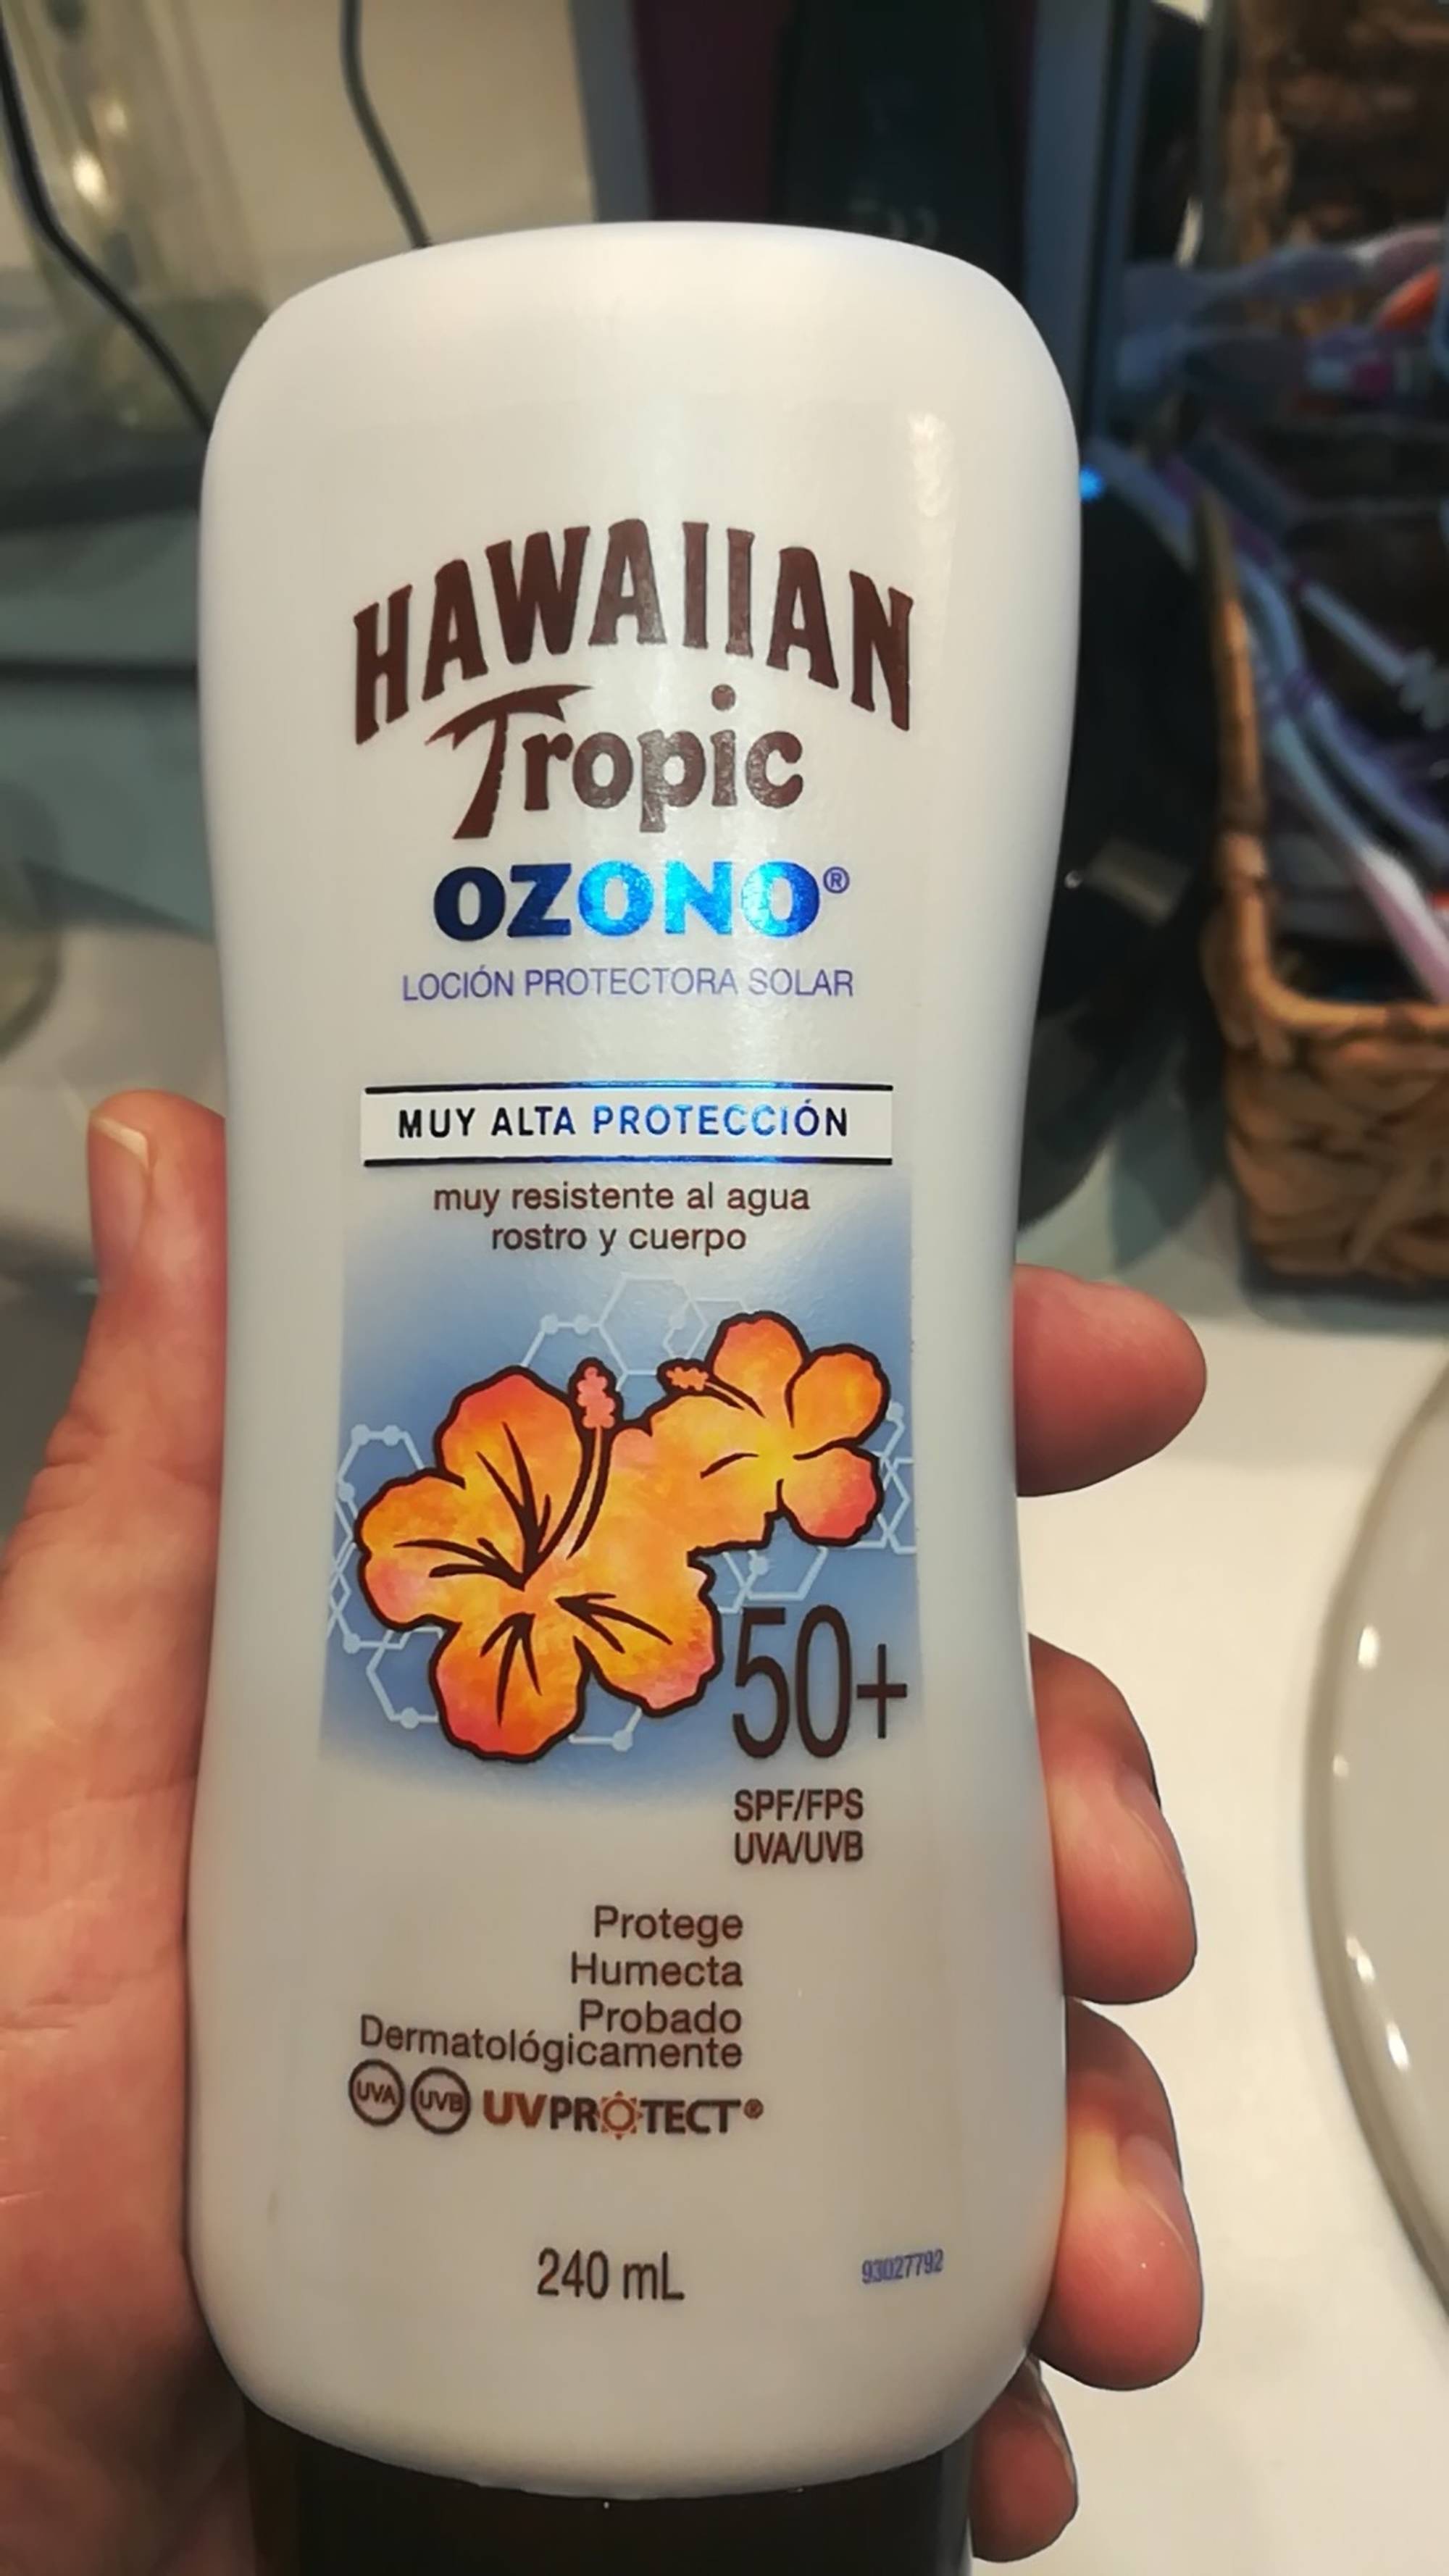 HAWAIIAN TROPIC - Ozono - Loción protectora solar SPF 50+